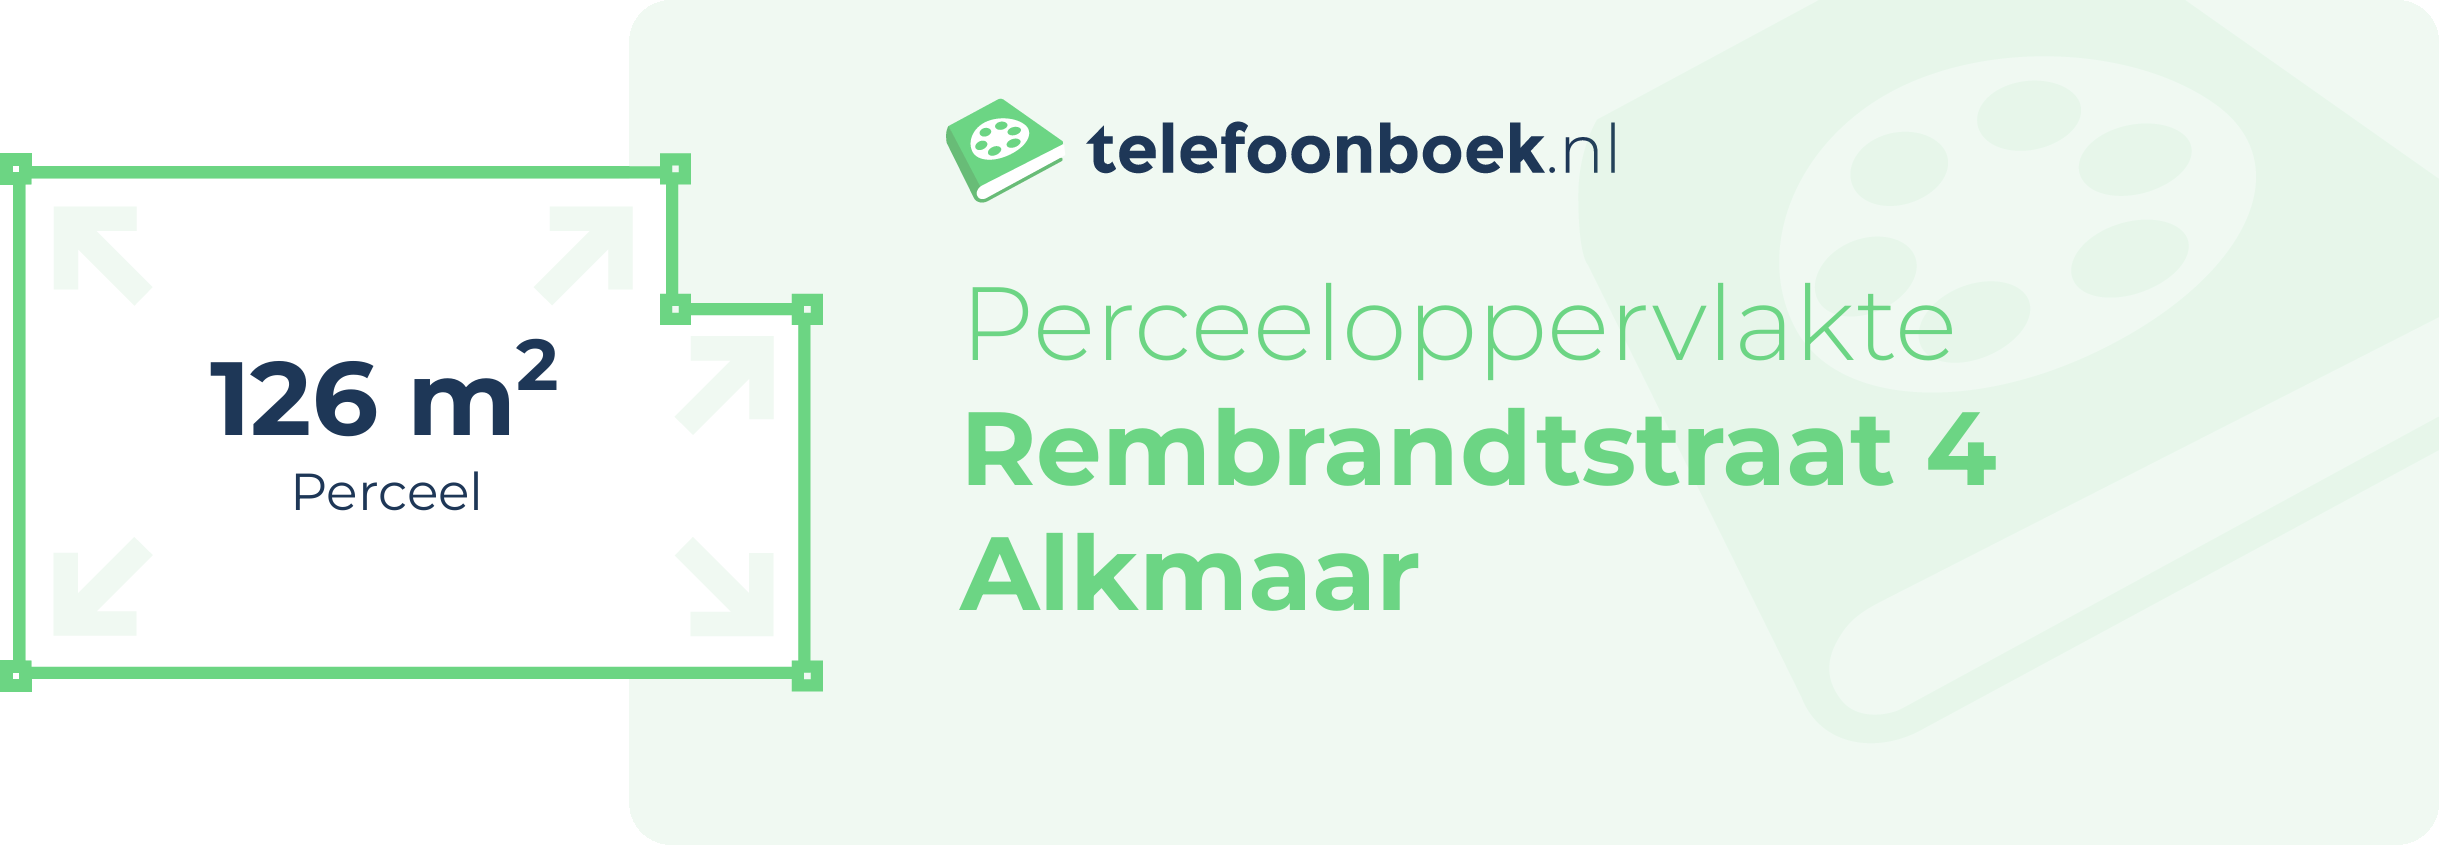 Perceeloppervlakte Rembrandtstraat 4 Alkmaar